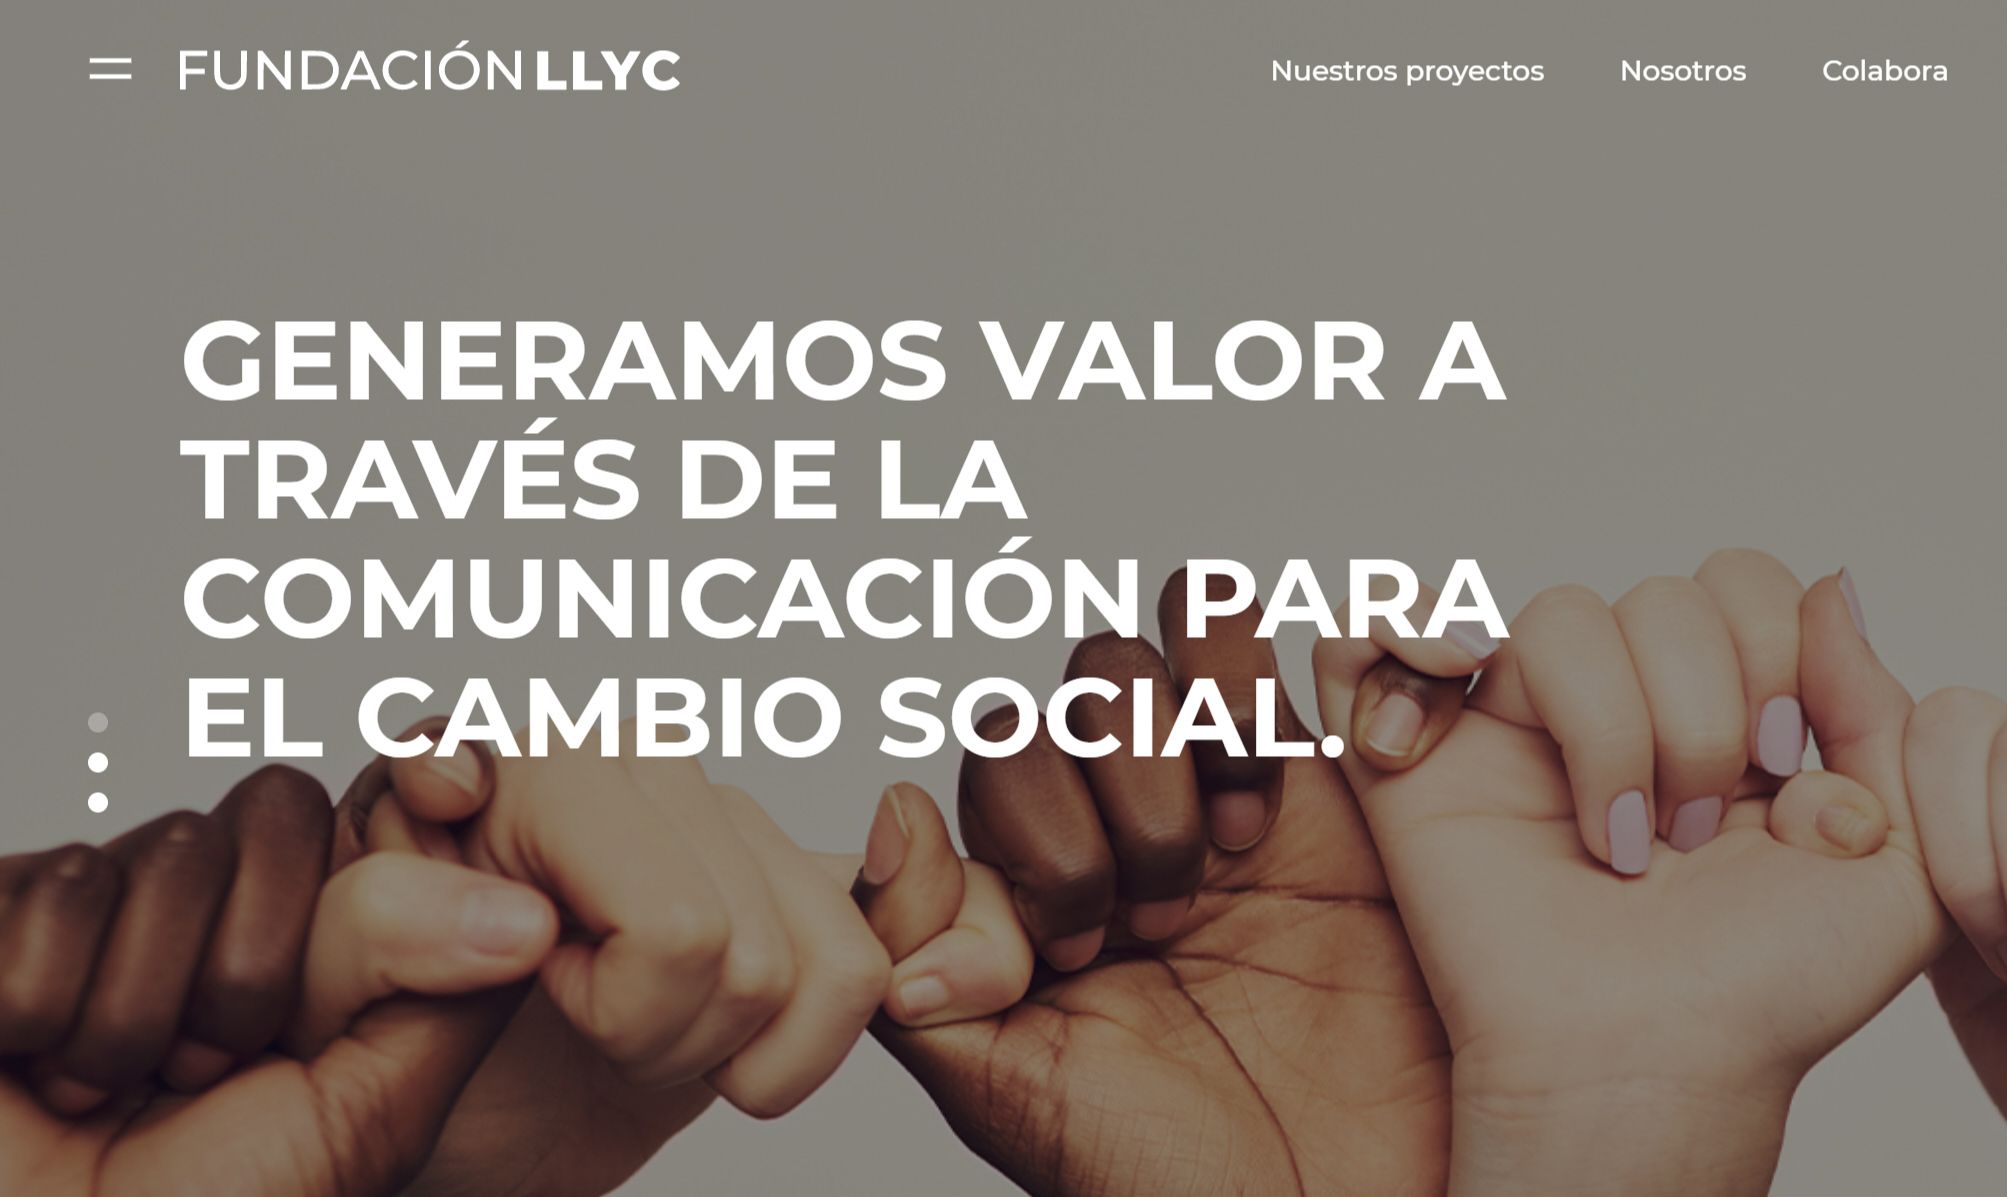 Fundación LLYC lanza su nueva web y presenta su memoria anual